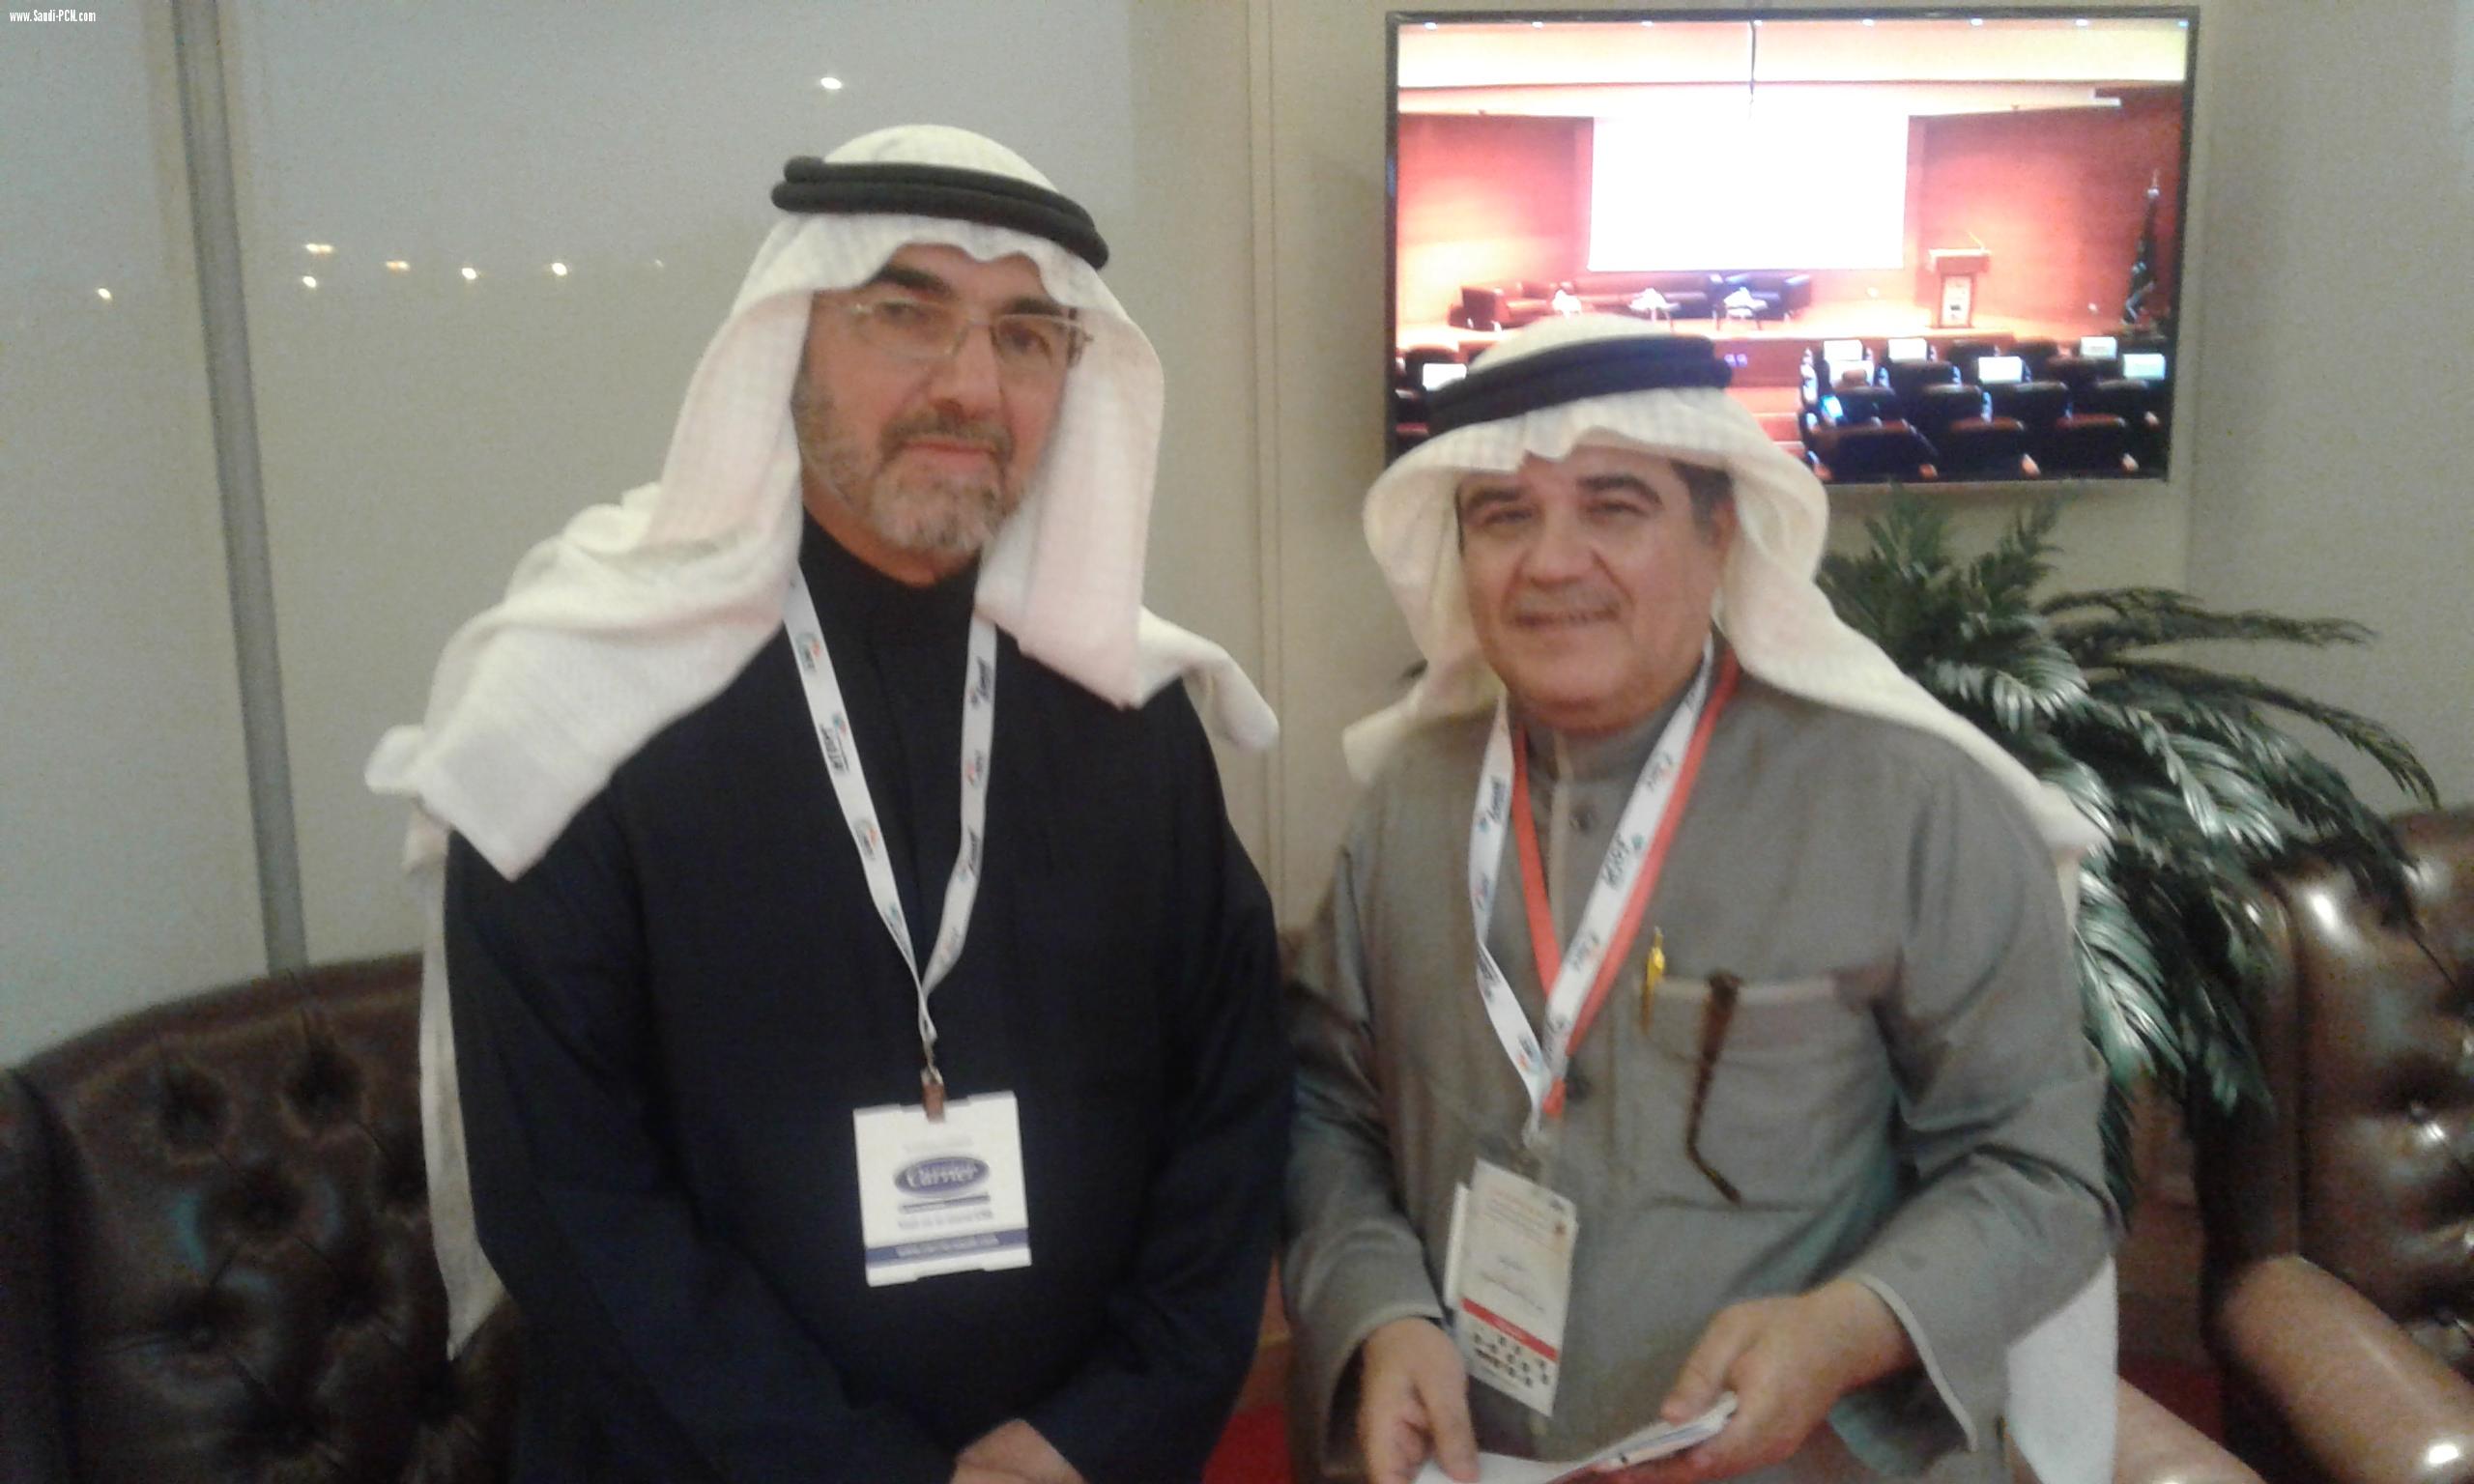  افتتاح المعرض الدولي للتكييف “HVACR Expo Saudi” بجدة بنجاح منقطع النظير